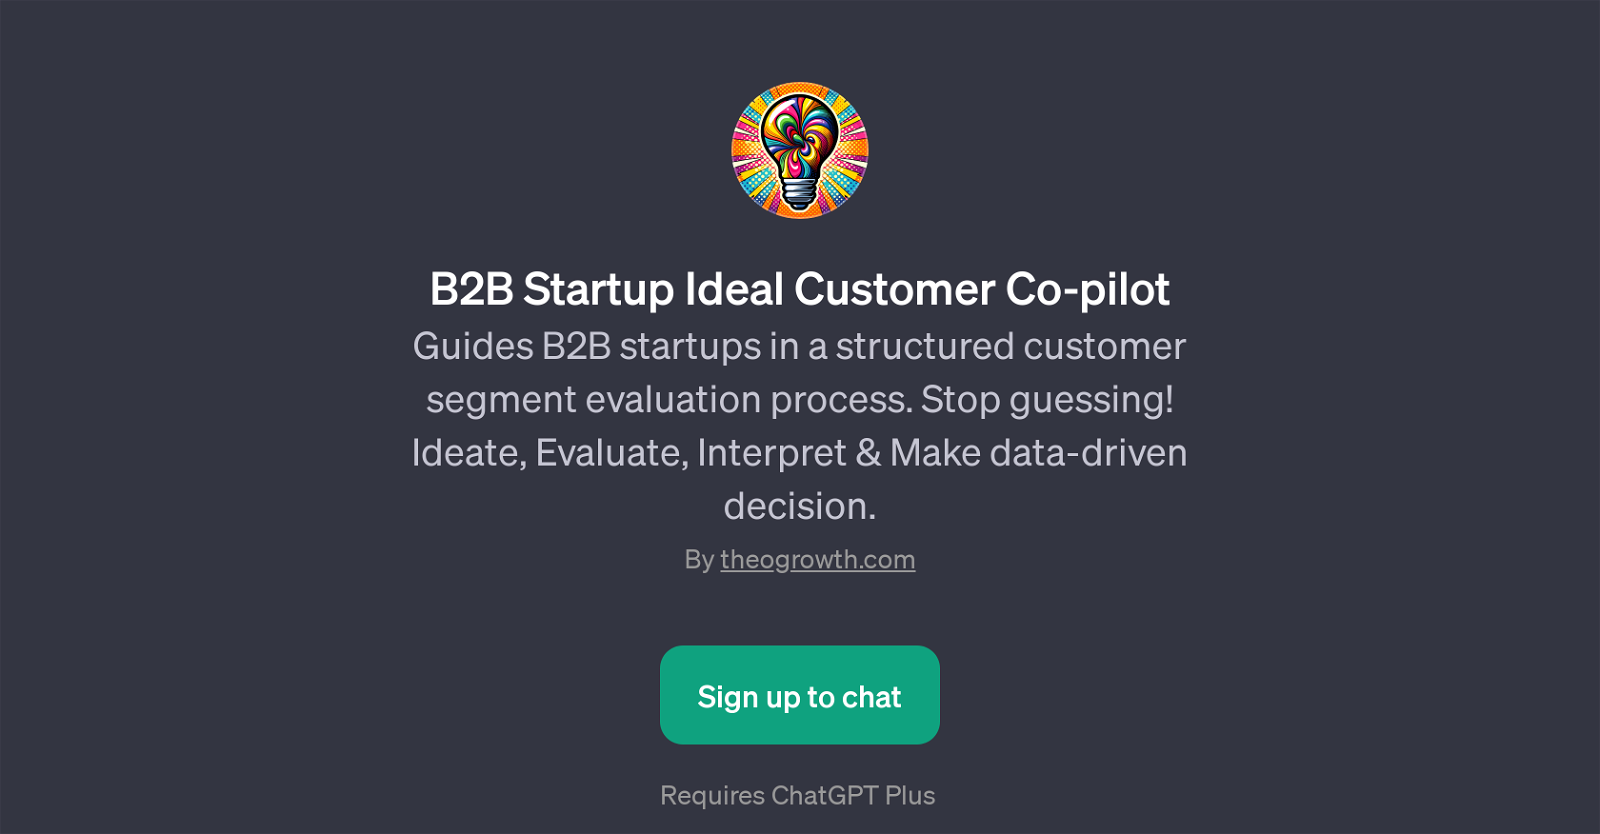 B2B Startup Ideal Customer Co-pilot website